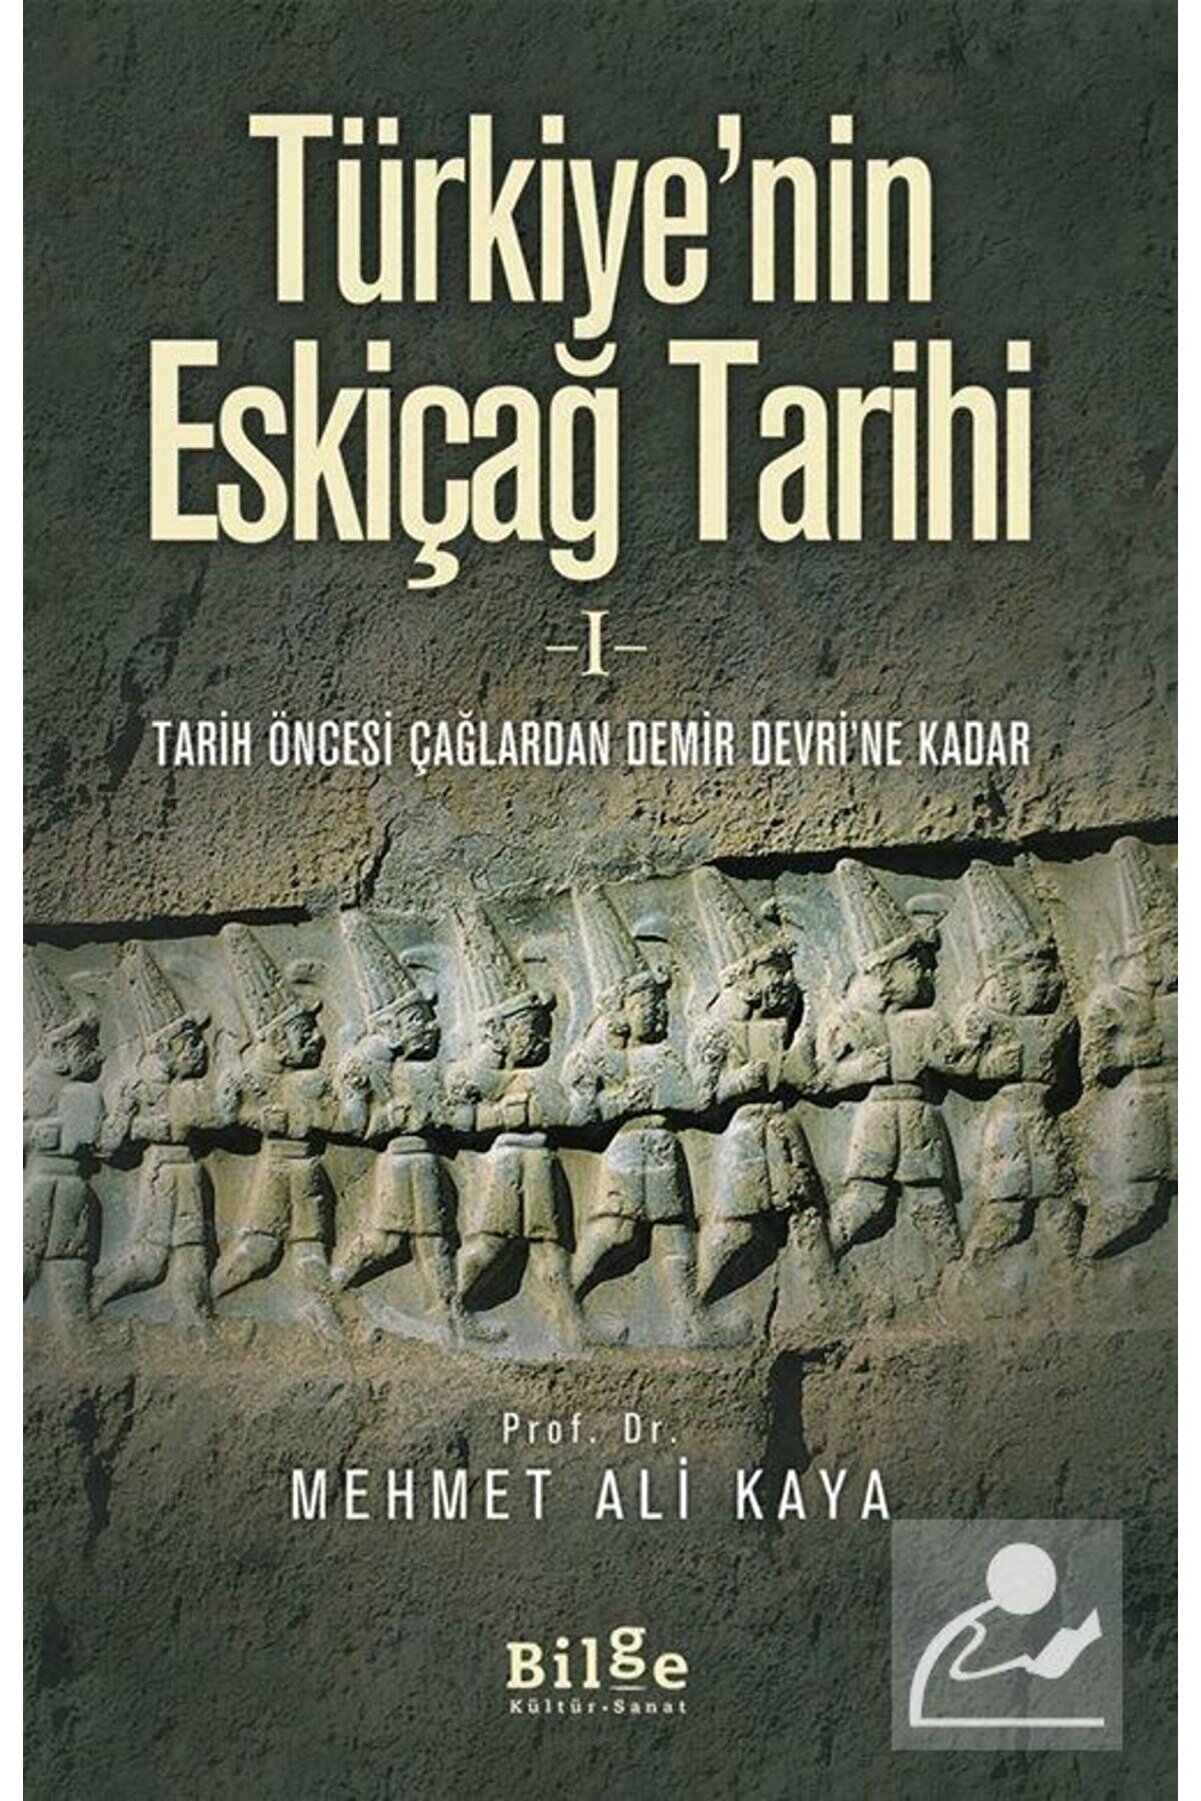 Bilge Kültür Sanat Türkiye'nin Eskiçağ Tarihi 1 & Tarih Öncesi Çağlardan Demir Devri'ne Kadar